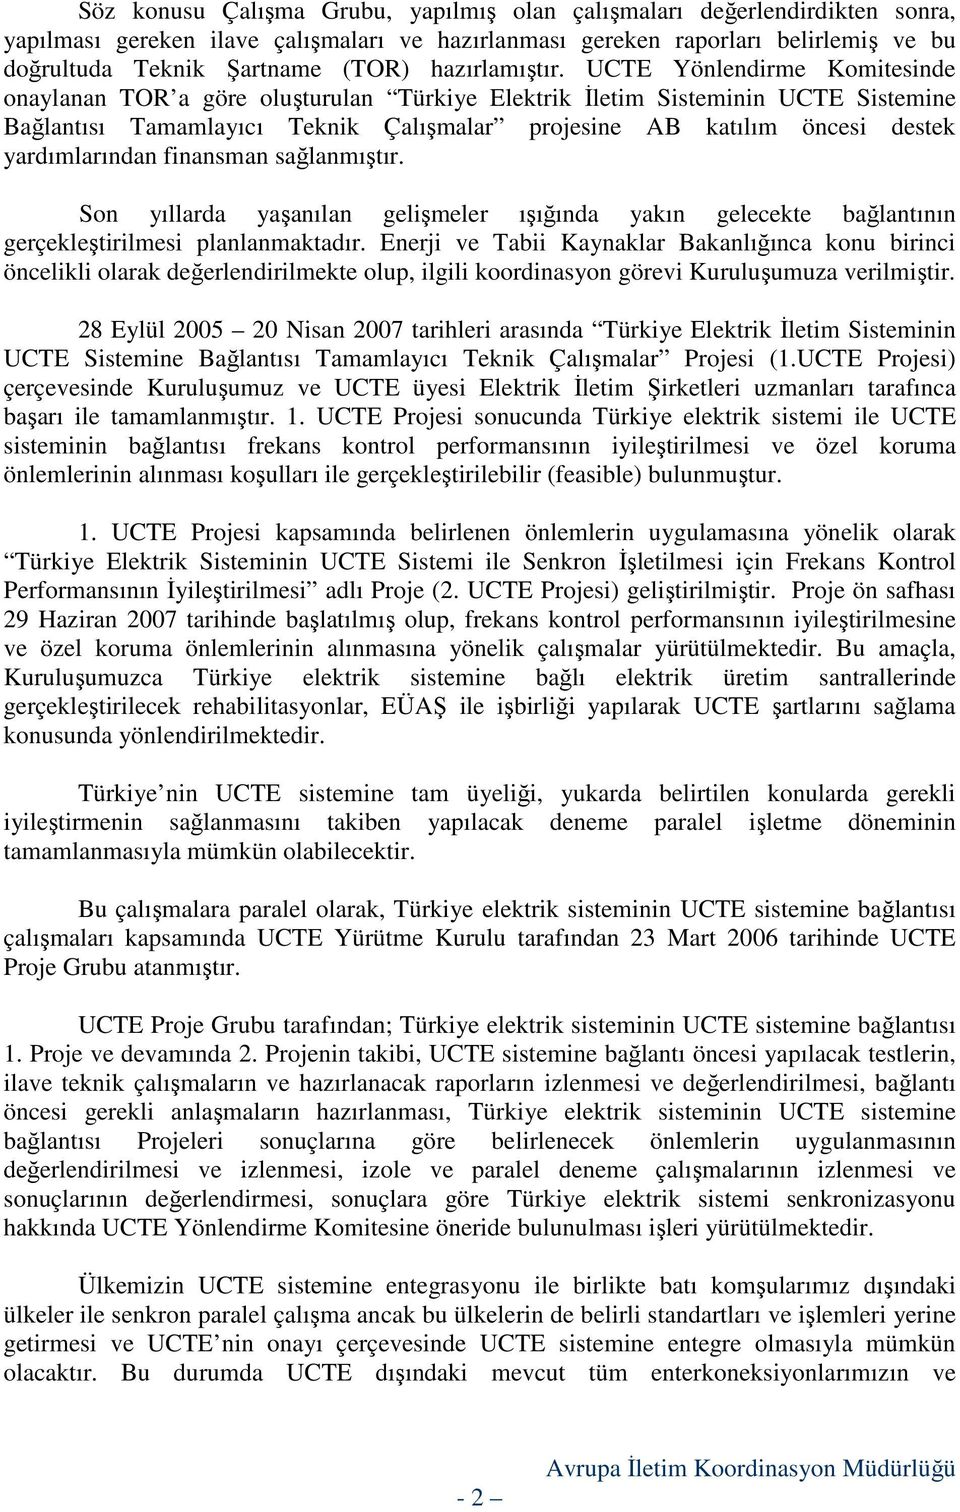 UCTE Yönlendirme Komitesinde onaylanan TOR a göre oluşturulan Türkiye Elektrik Đletim Sisteminin UCTE Sistemine Bağlantısı Tamamlayıcı Teknik Çalışmalar projesine AB katılım öncesi destek